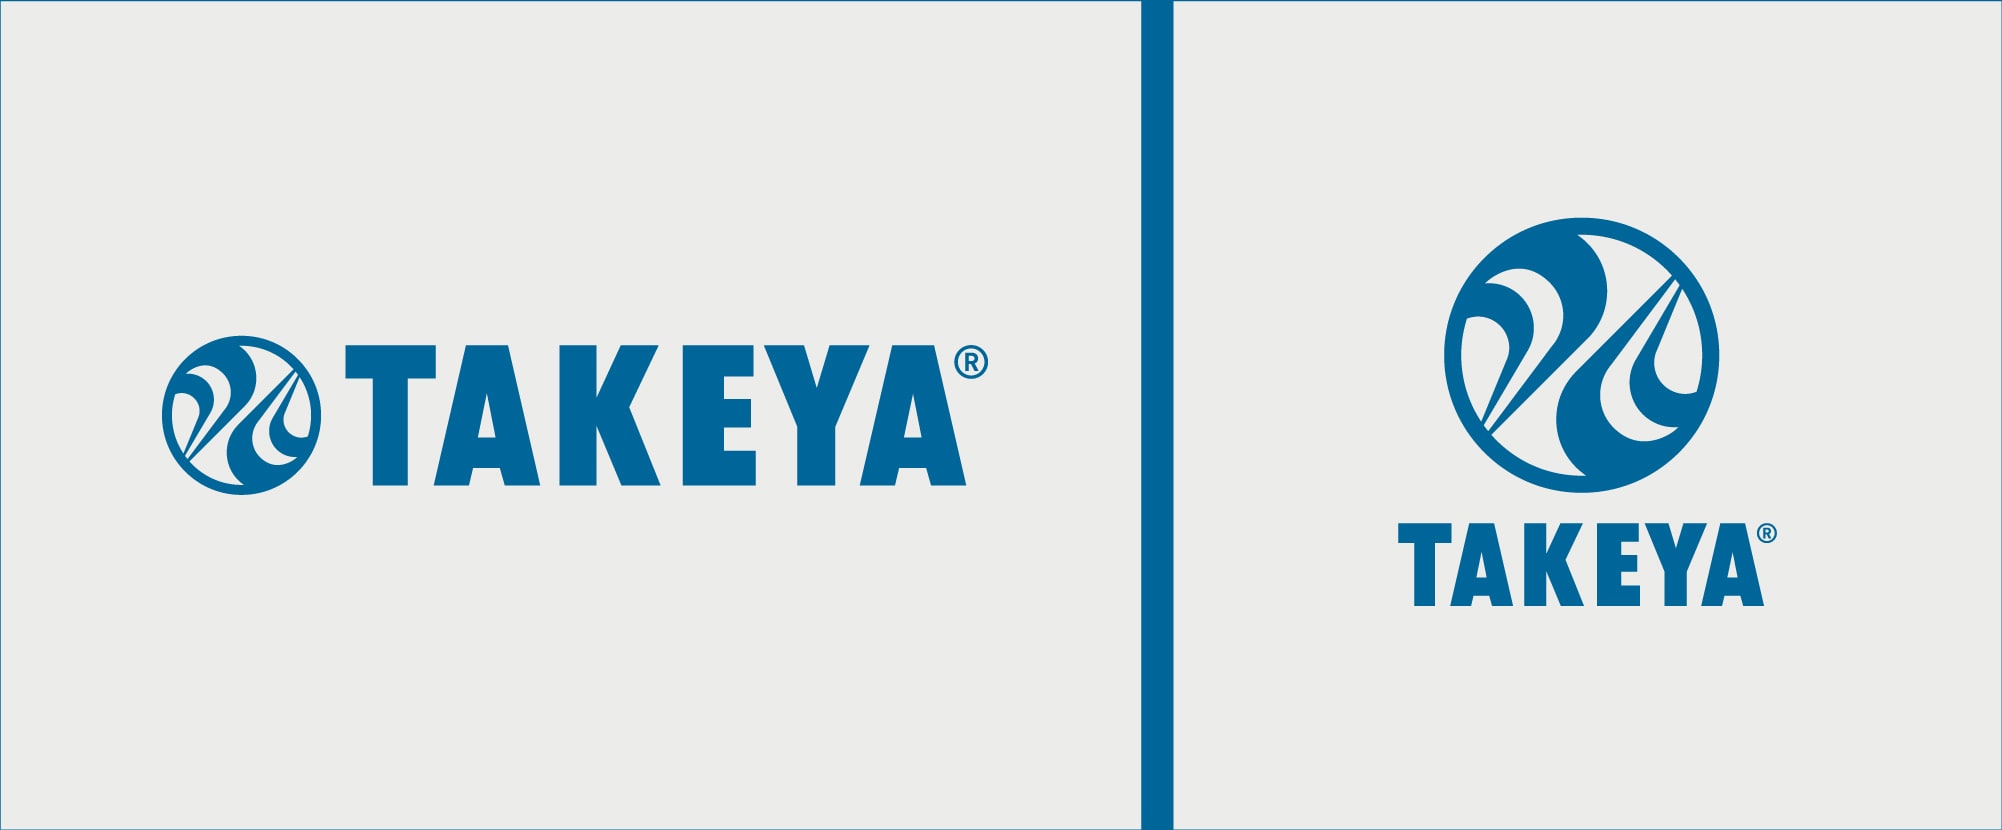 Takeya Branding - Pring Design